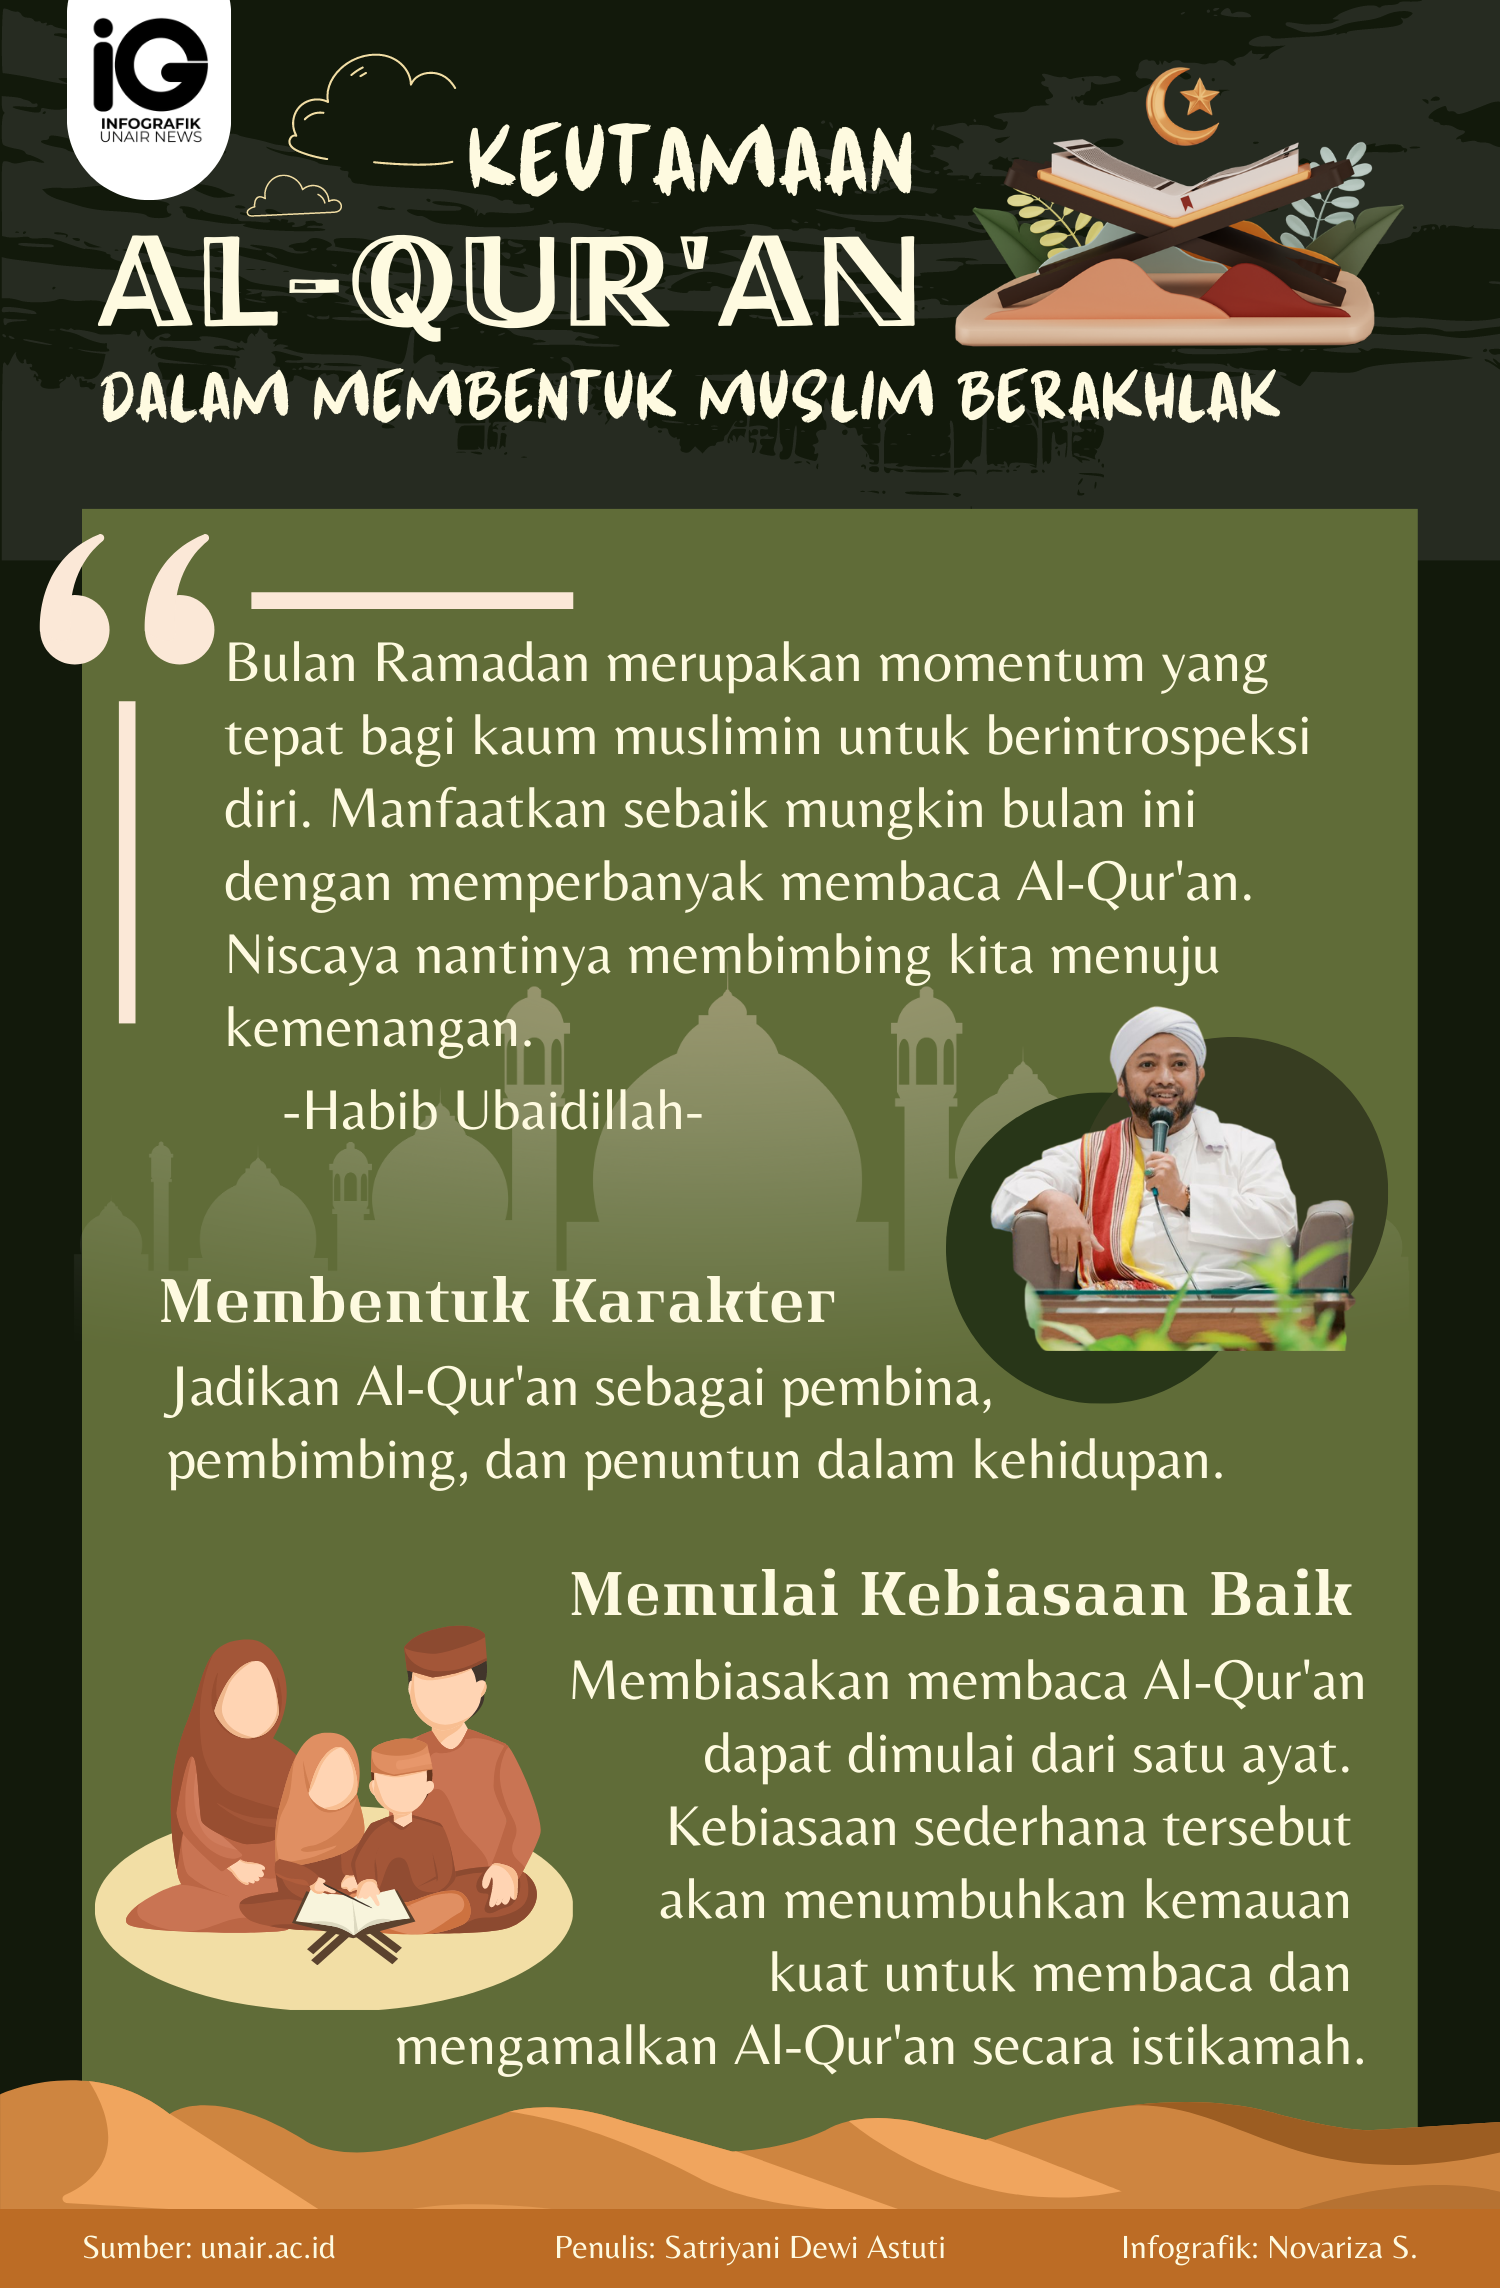 Infografik: Al-Qur'an dalam Membangun Karakter Muslim Berakhlak